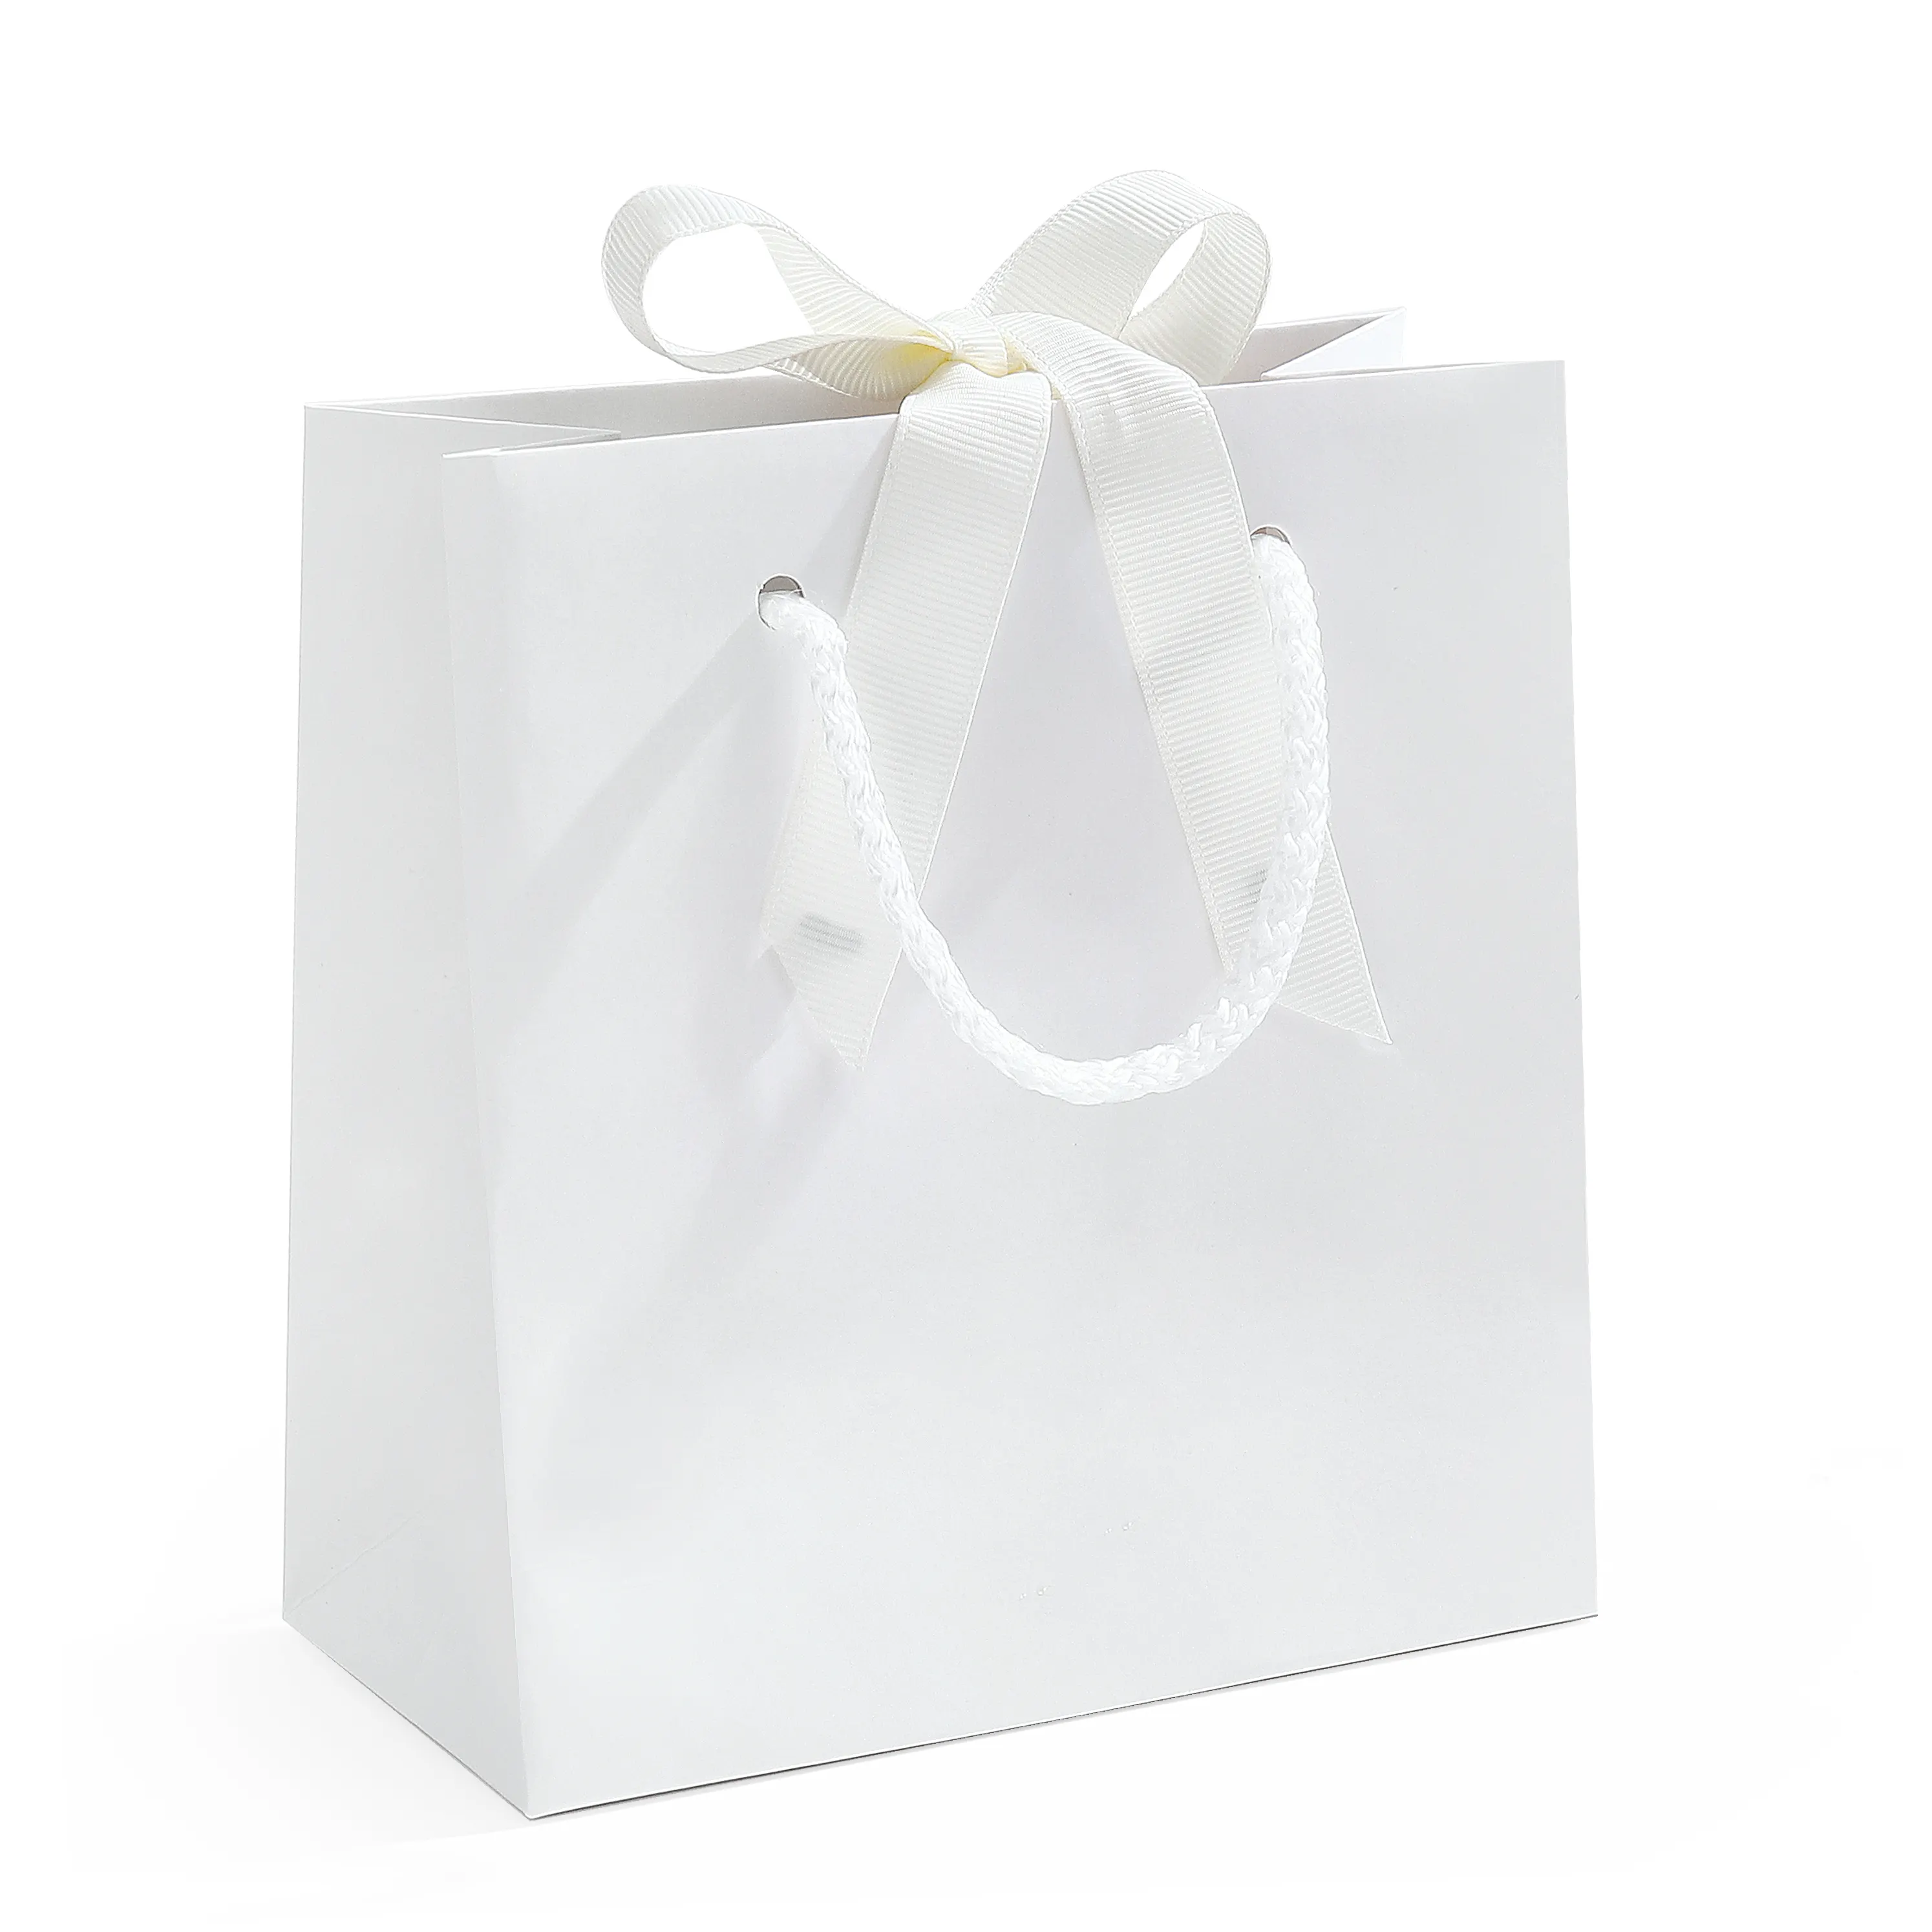 スポット環境保護紙袋再利用可能な空白のハンドバッグ白結ばれたギフト包装卸売ショッピング紙袋